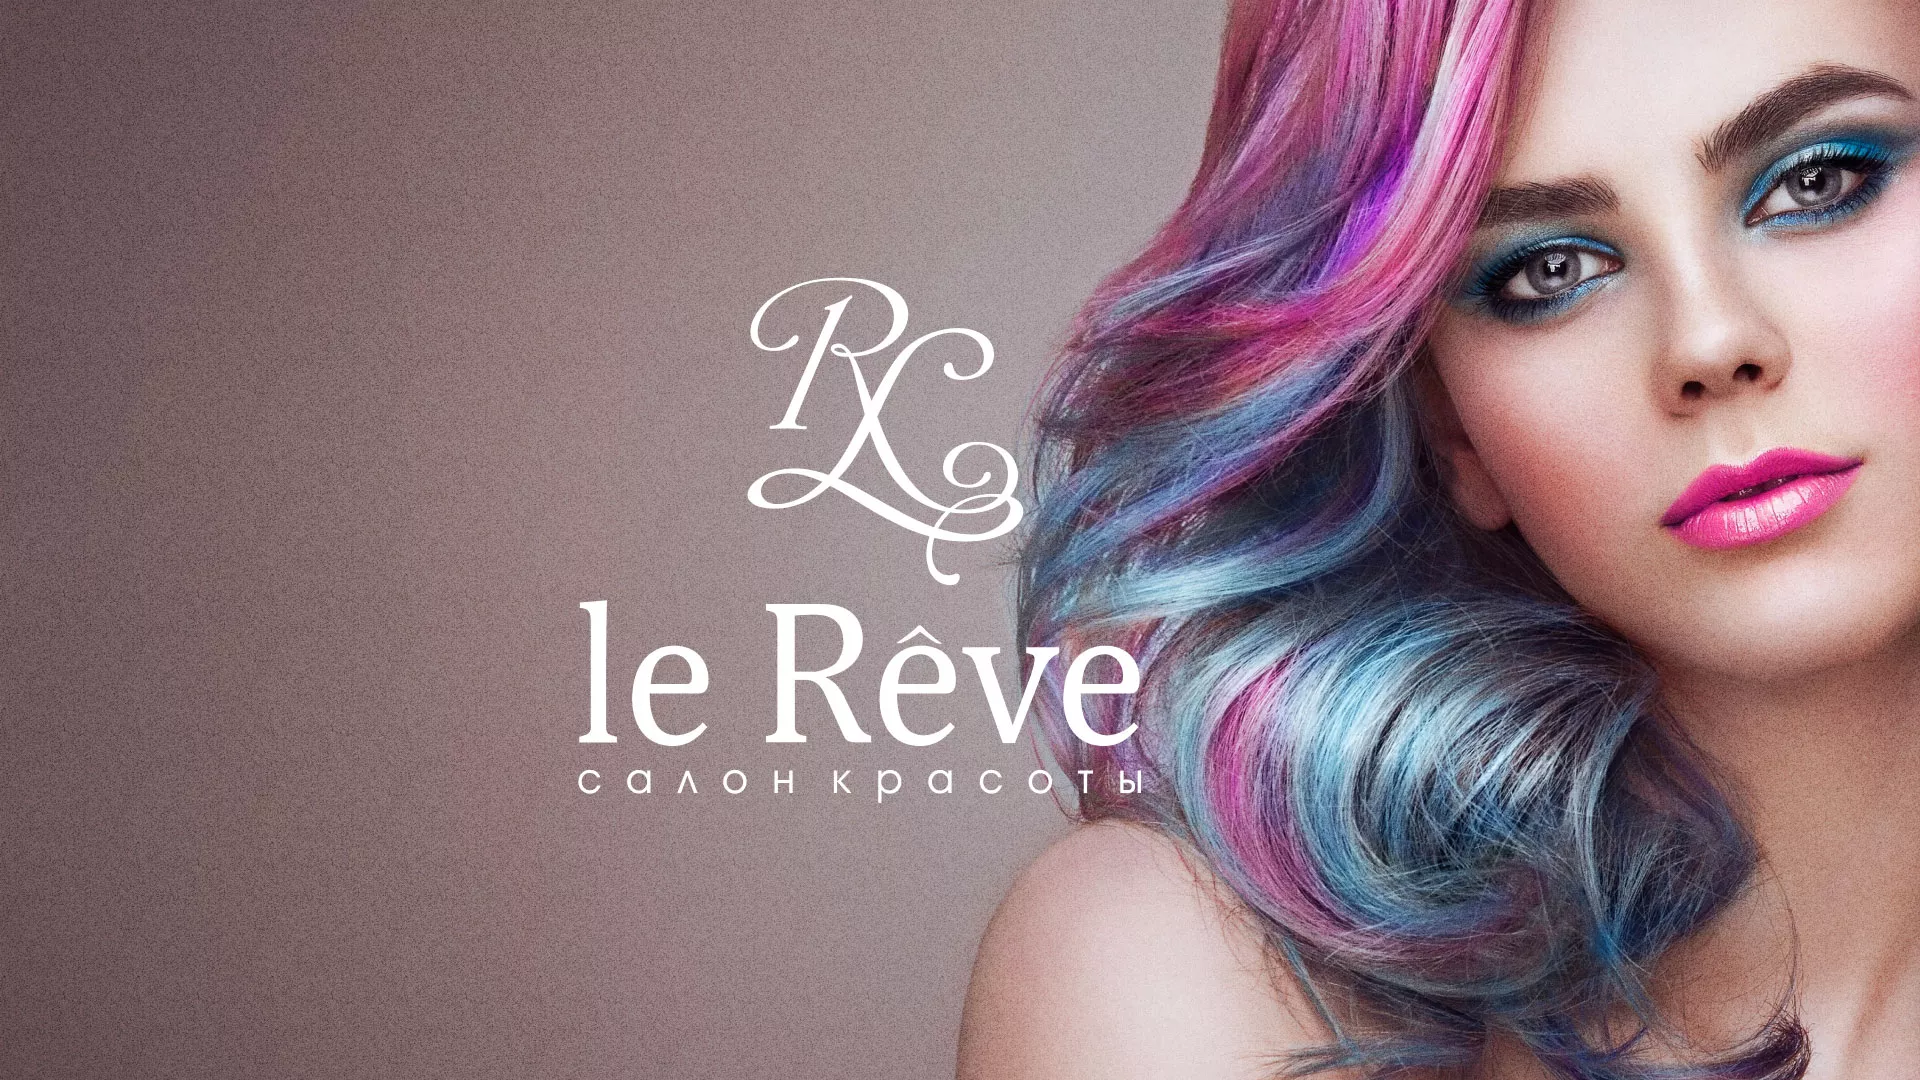 Создание сайта для салона красоты «Le Reve» в Алексине